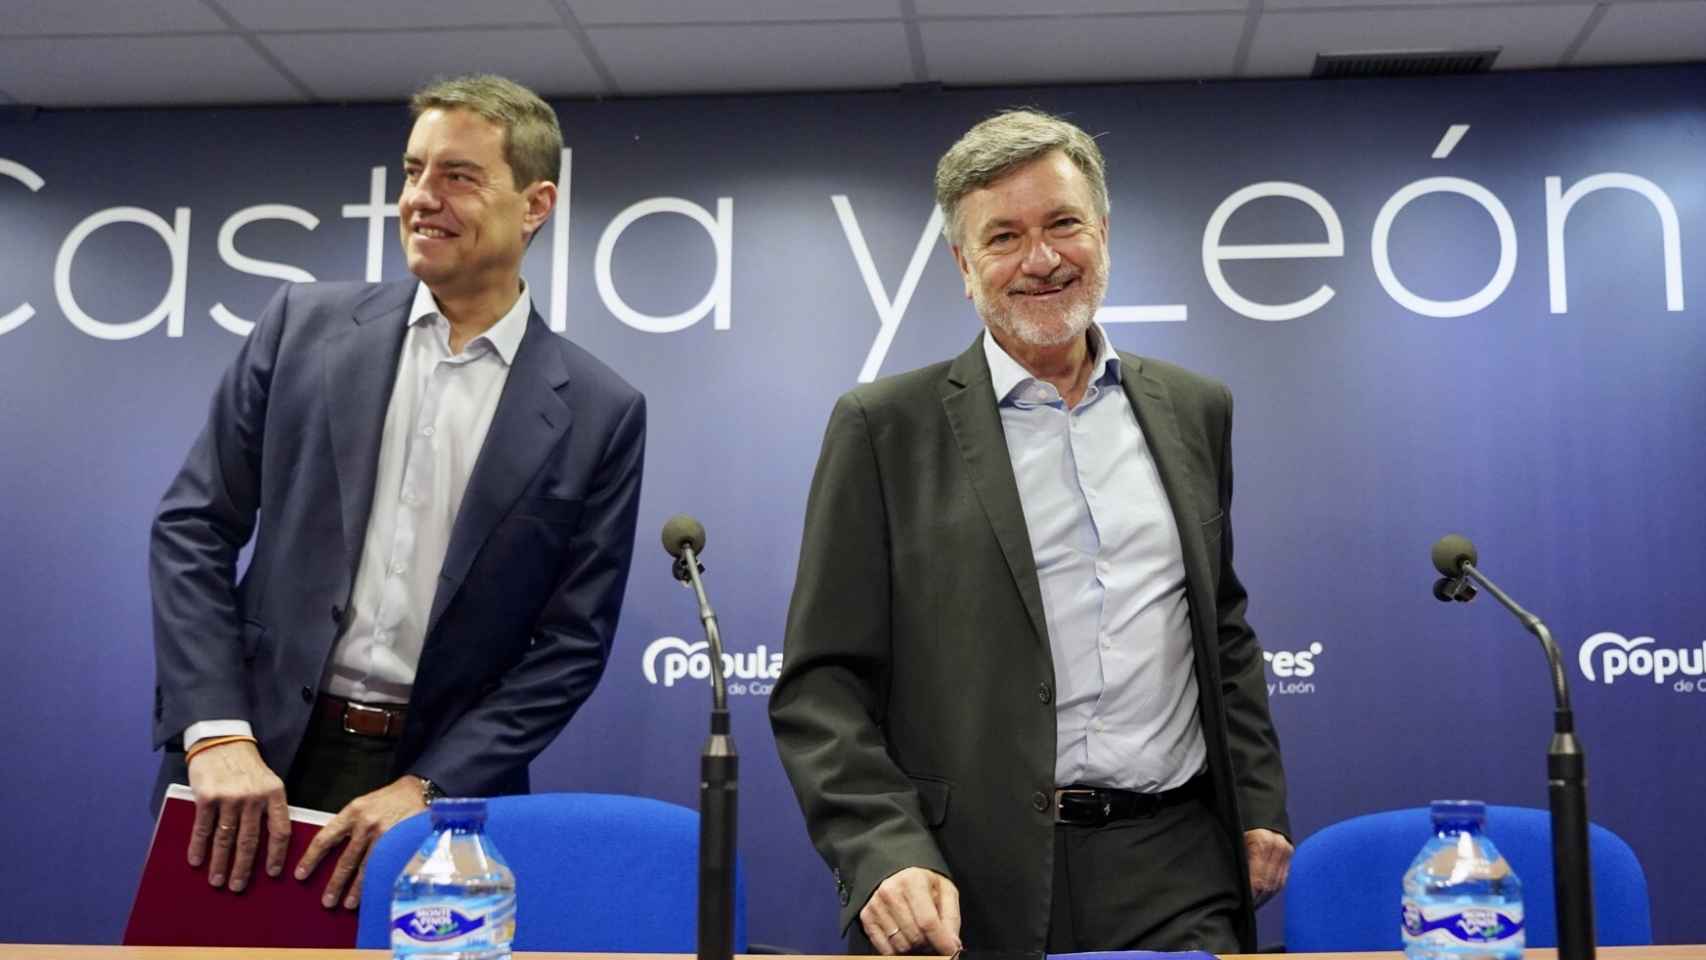 El Partido Popular del Castilla y León informa sobre las candidaturas que se presentan a las elecciones del 28 de mayo. En la imagen, Francisco Vázquez y Ángel Ibáñez